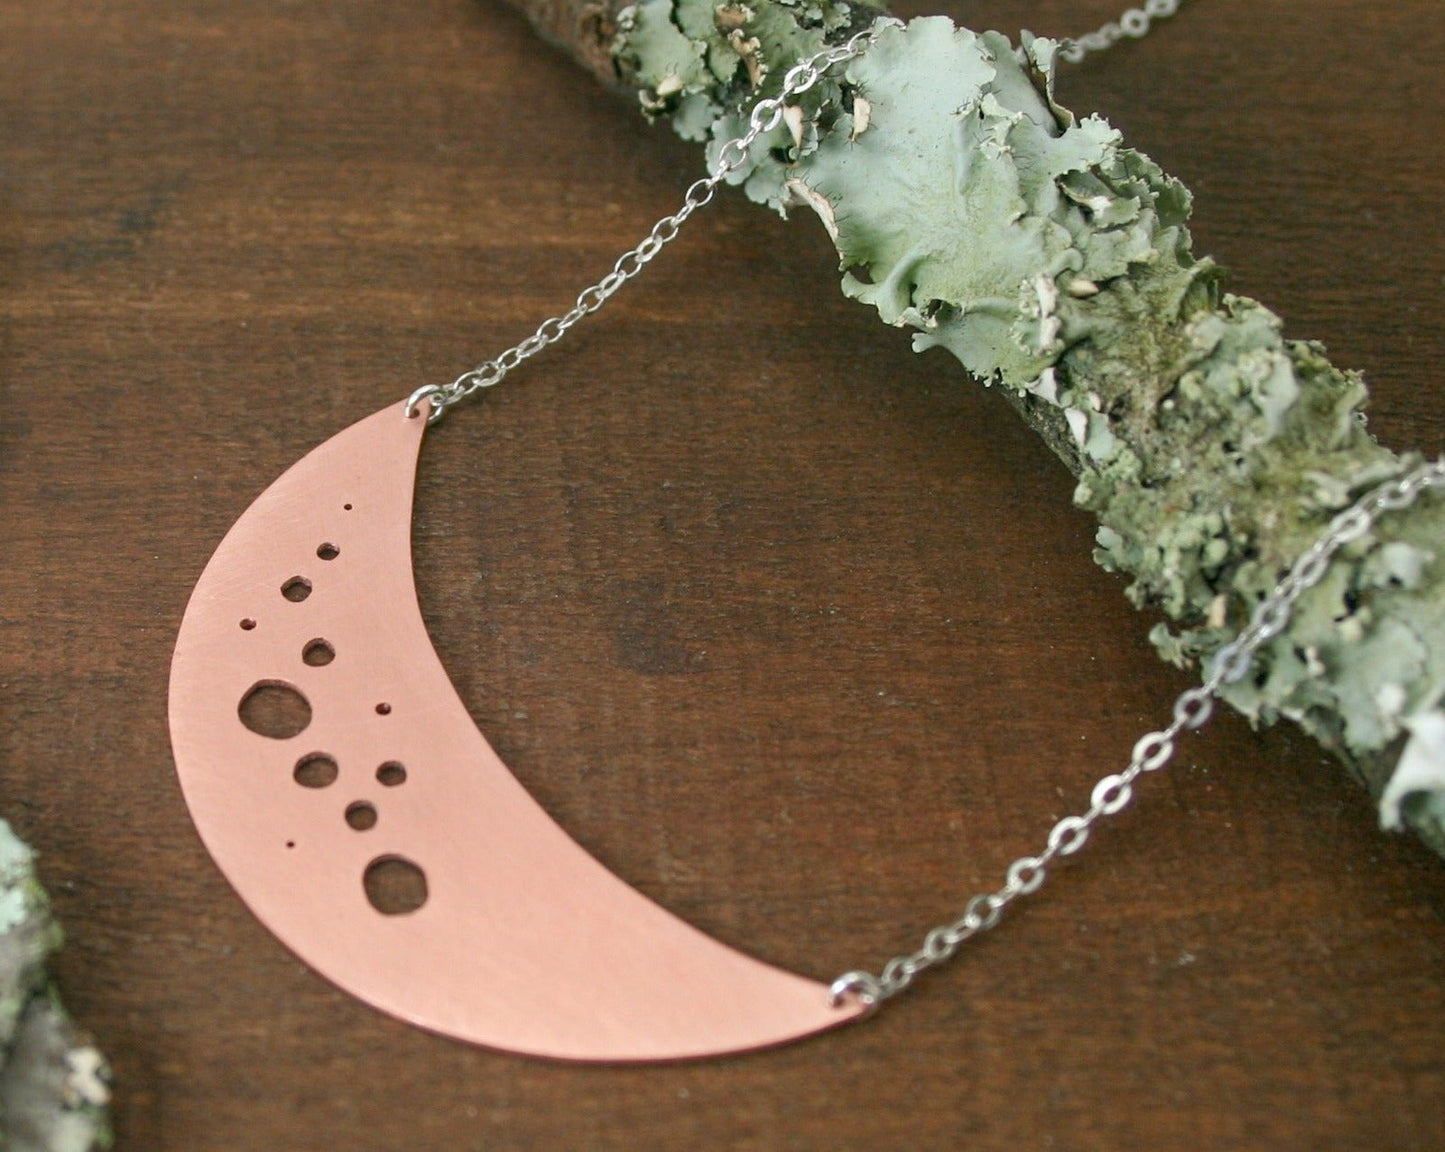 Botanical large Moon necklace